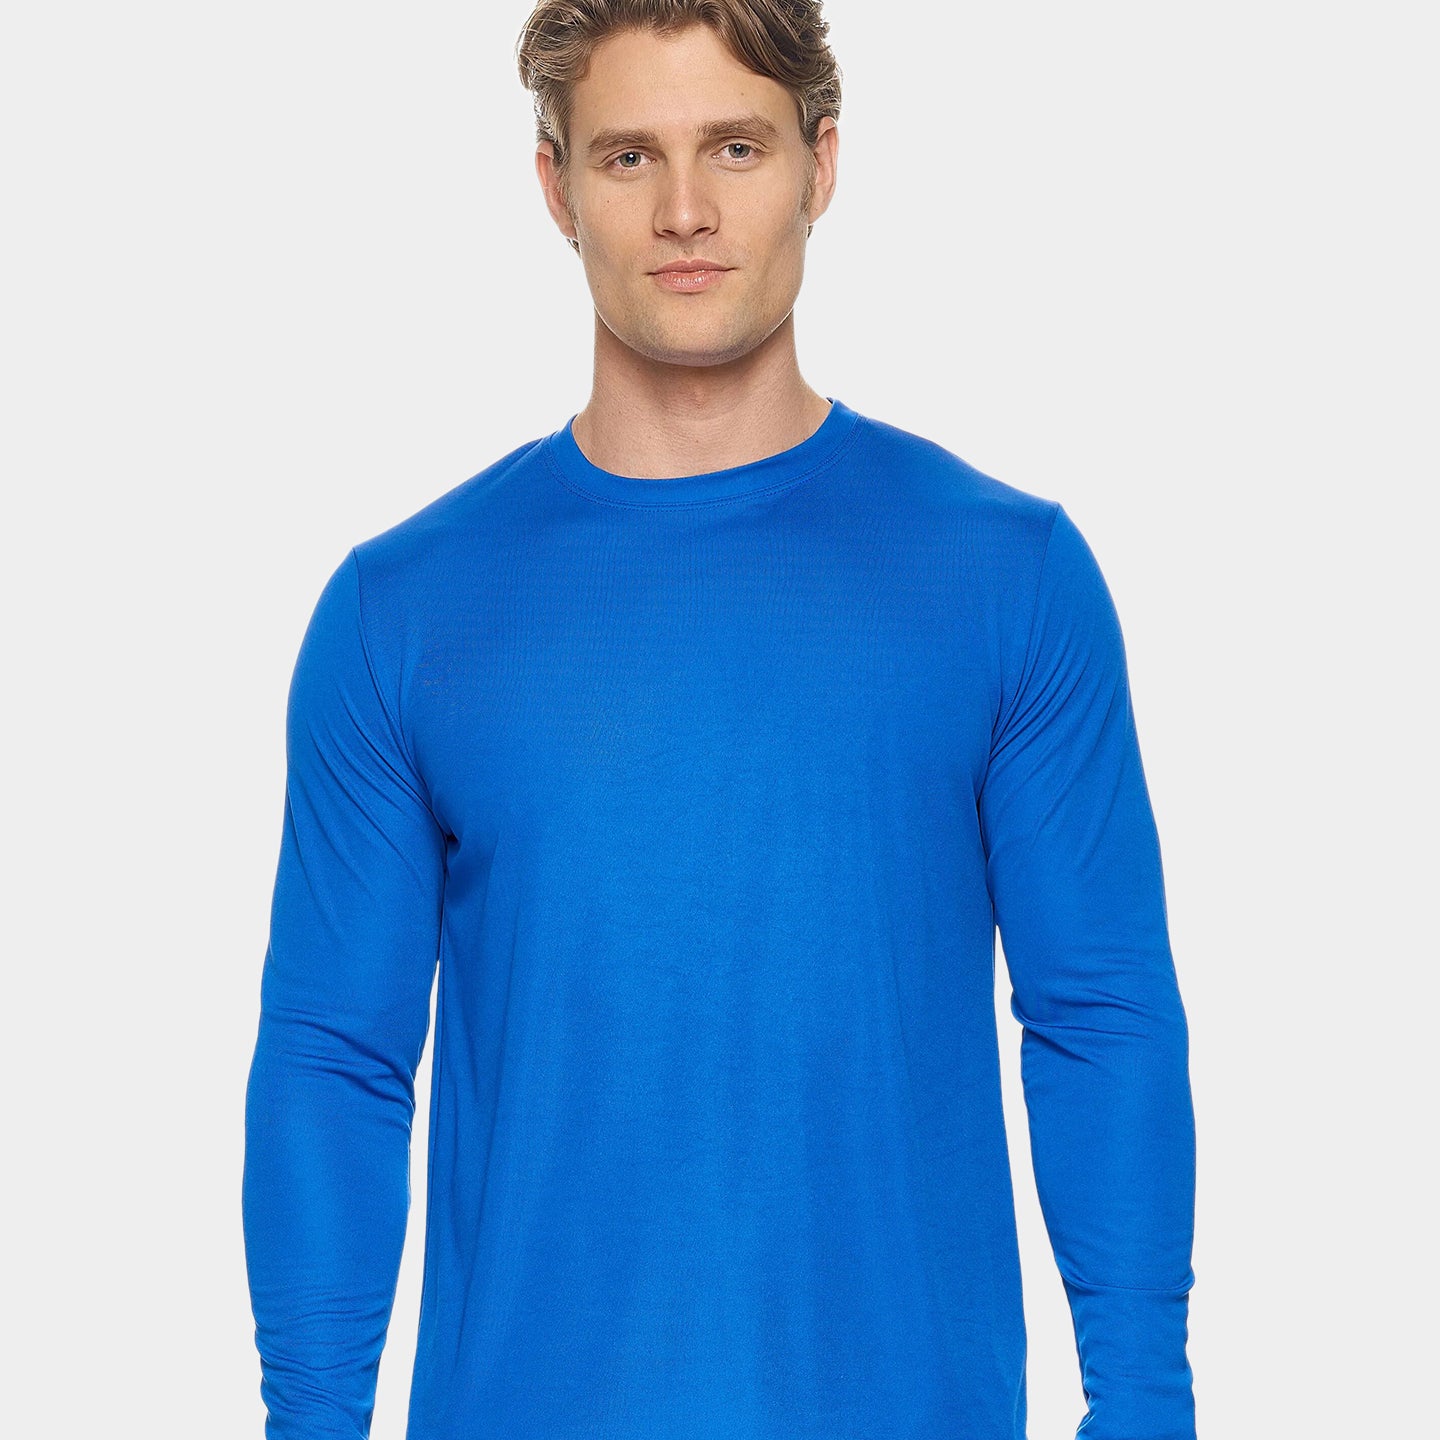 Expert Brand DriMax Men's Performance Long Sleeve Shirt, 2XL, Royal Blue A1